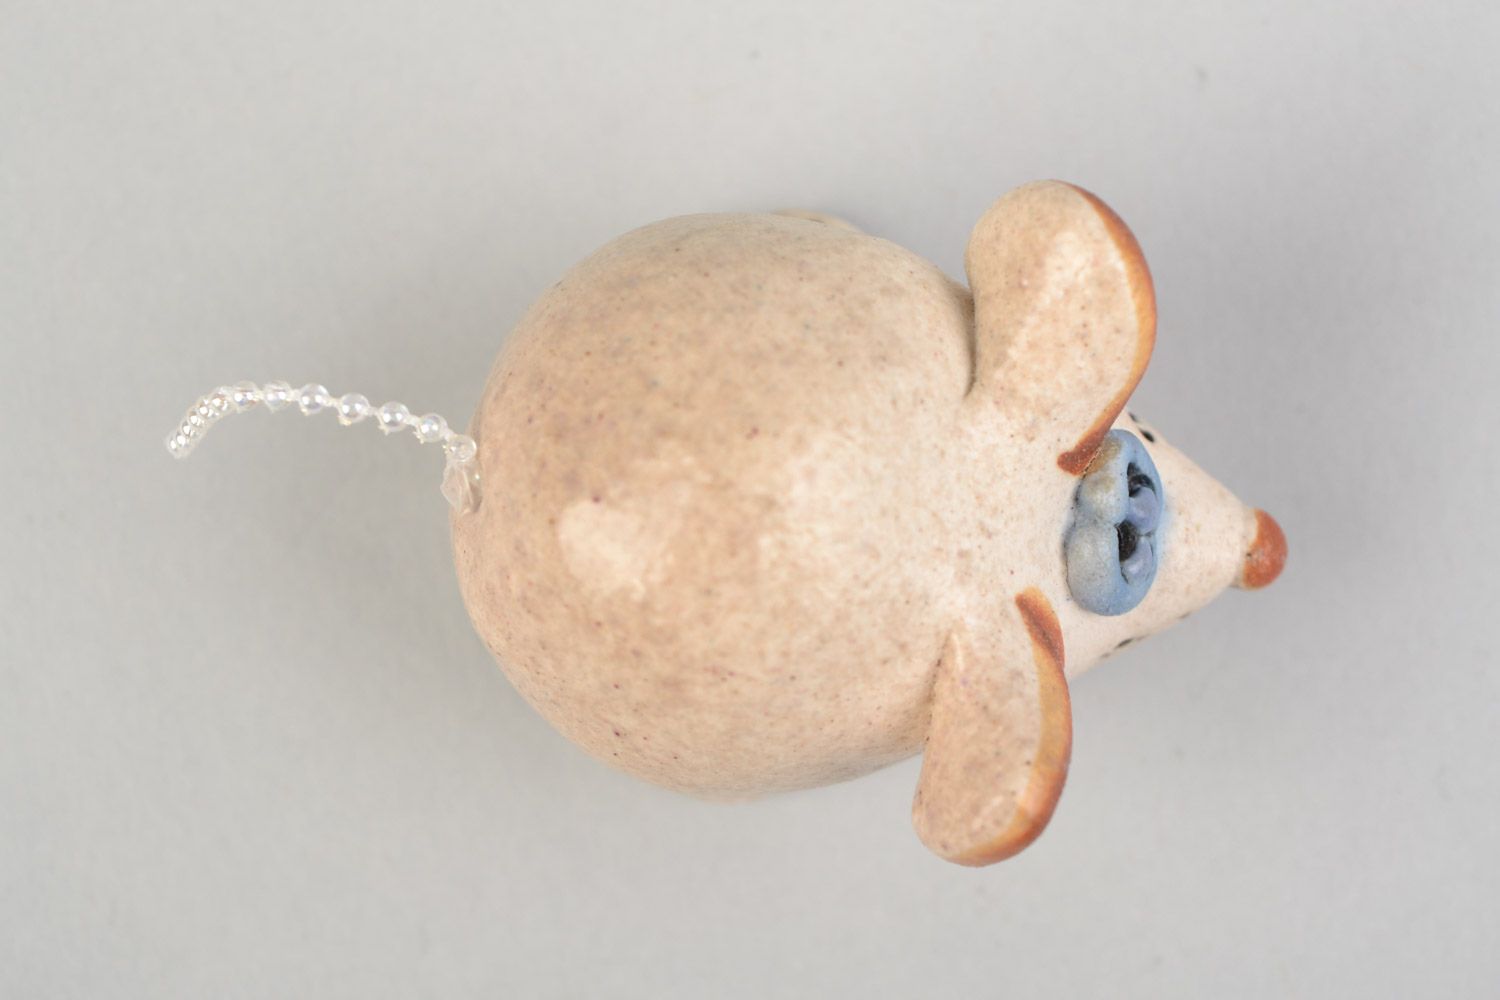 Авторская расписанная глазурью глиняная фигурка мышонка грустного ручной работы фото 4